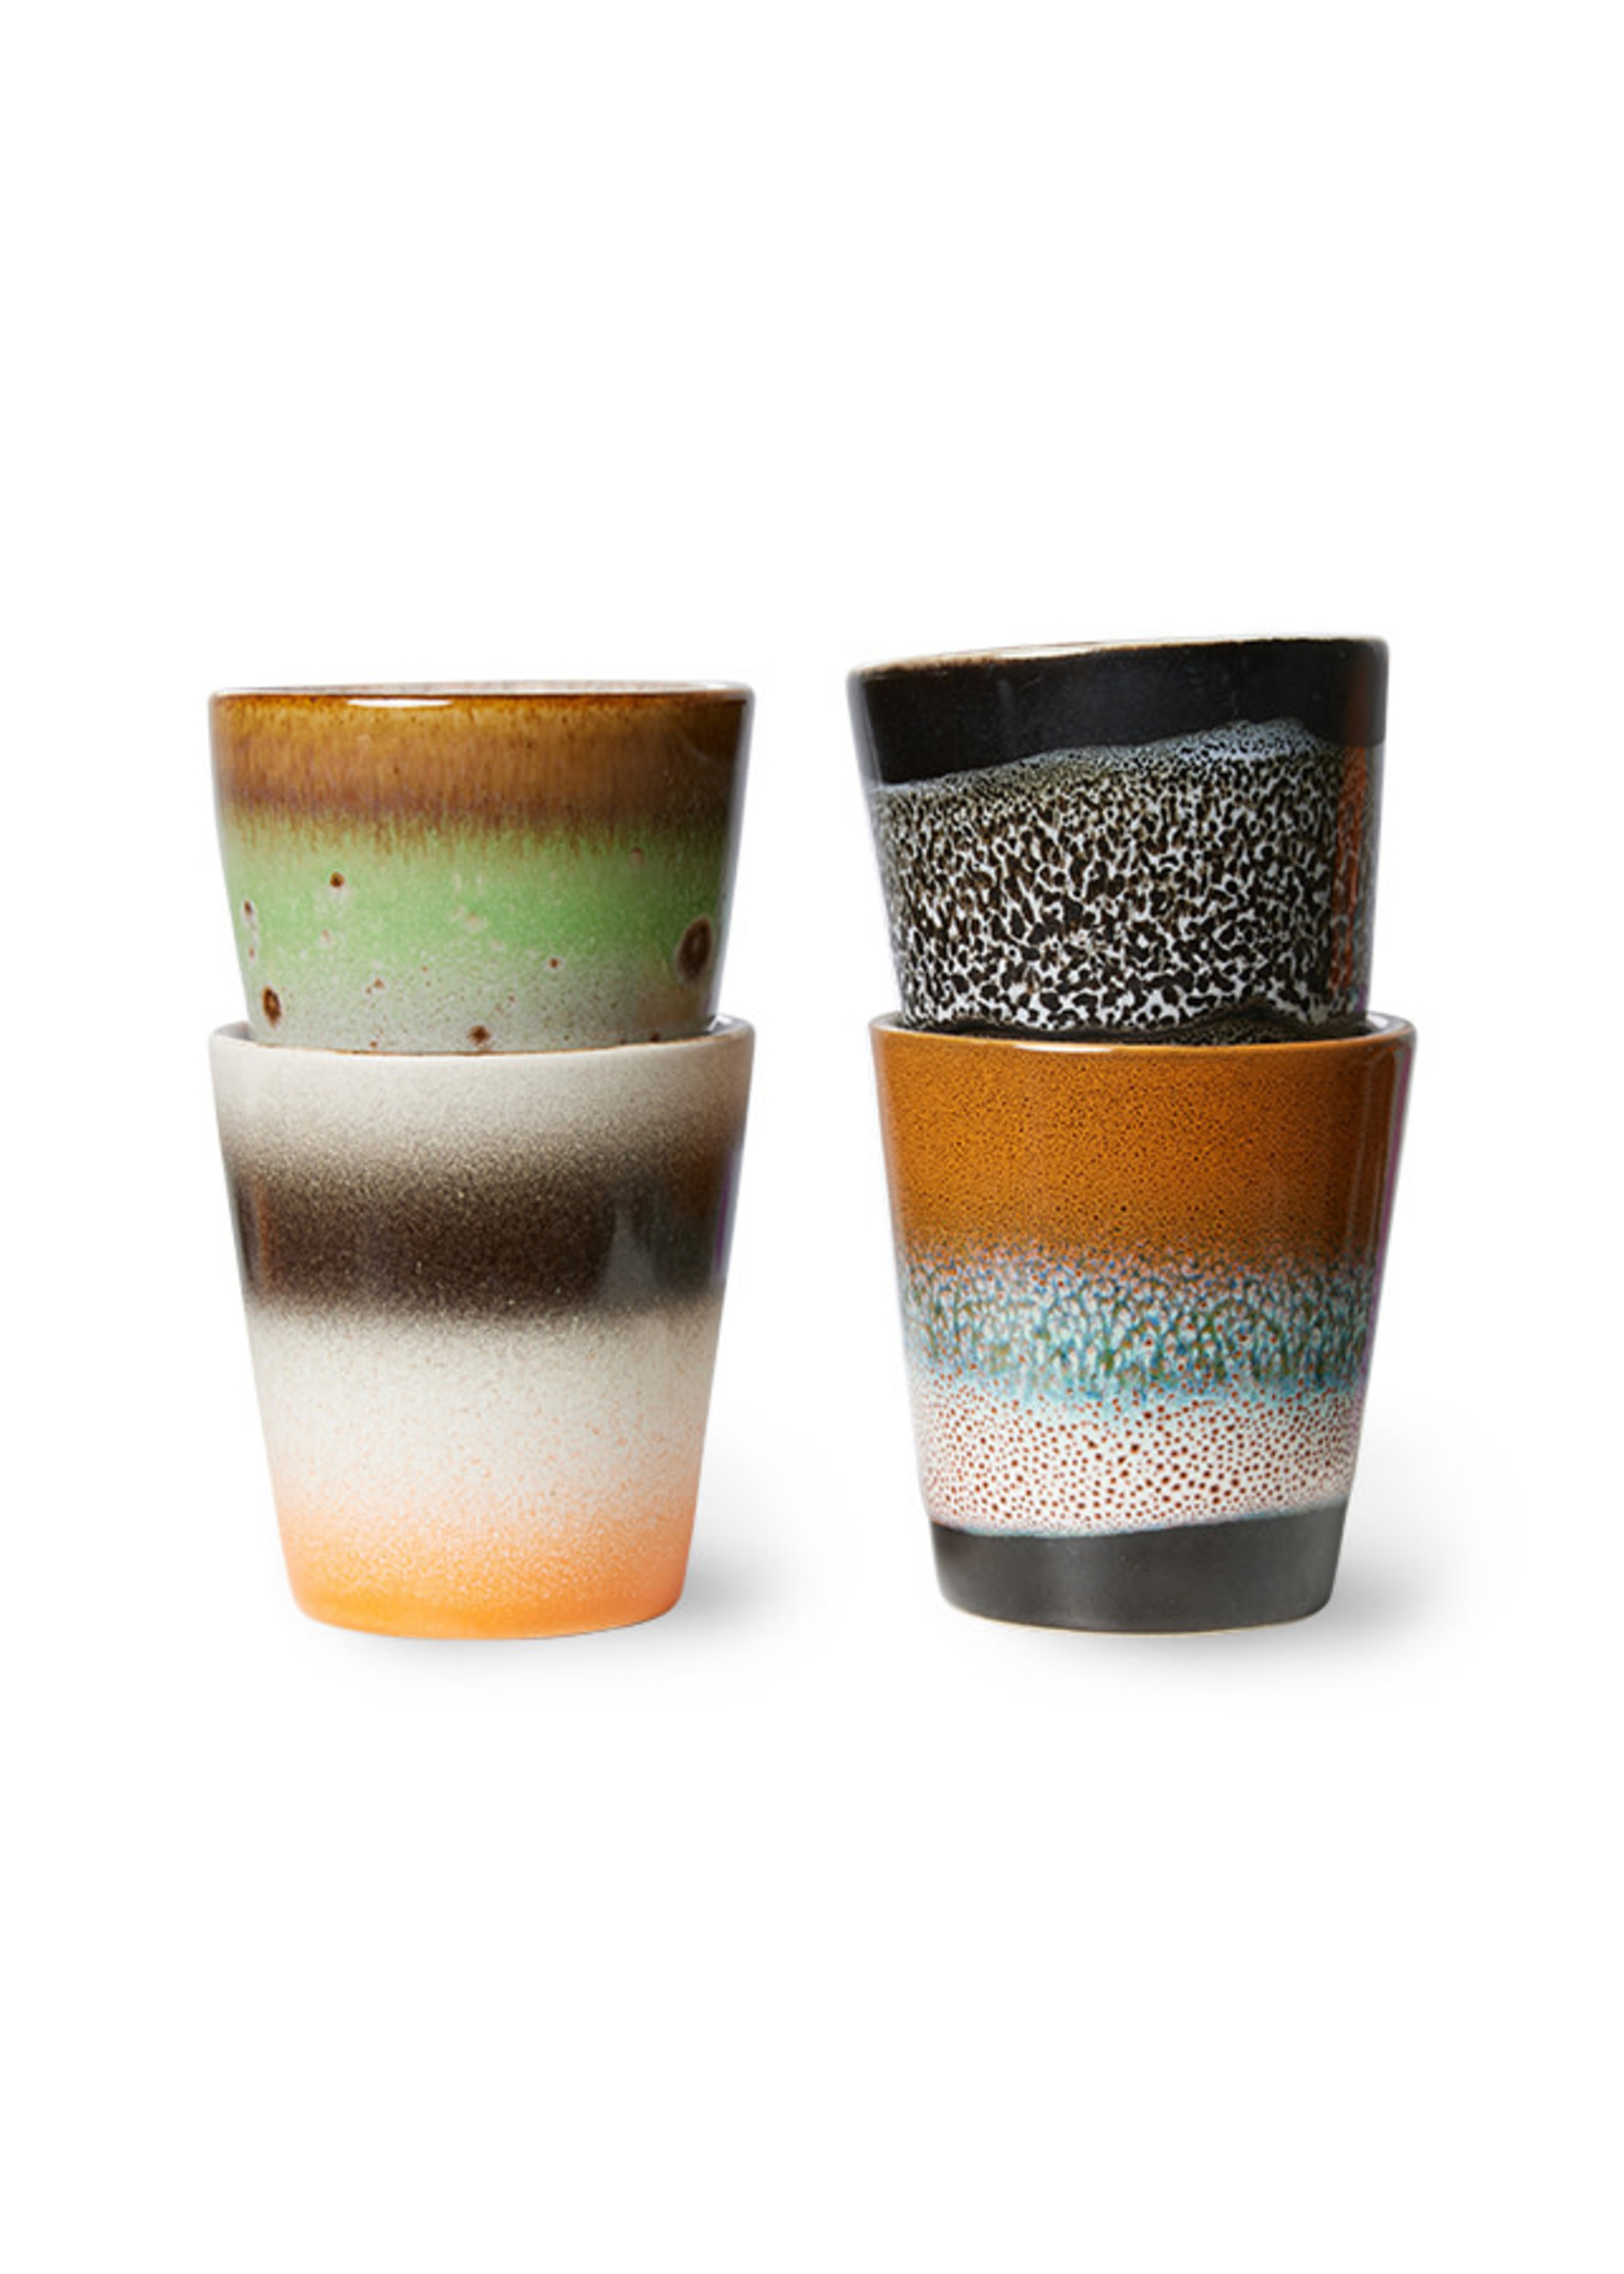 HKliving 70s ceramics: ristretto mugs, Good vibes